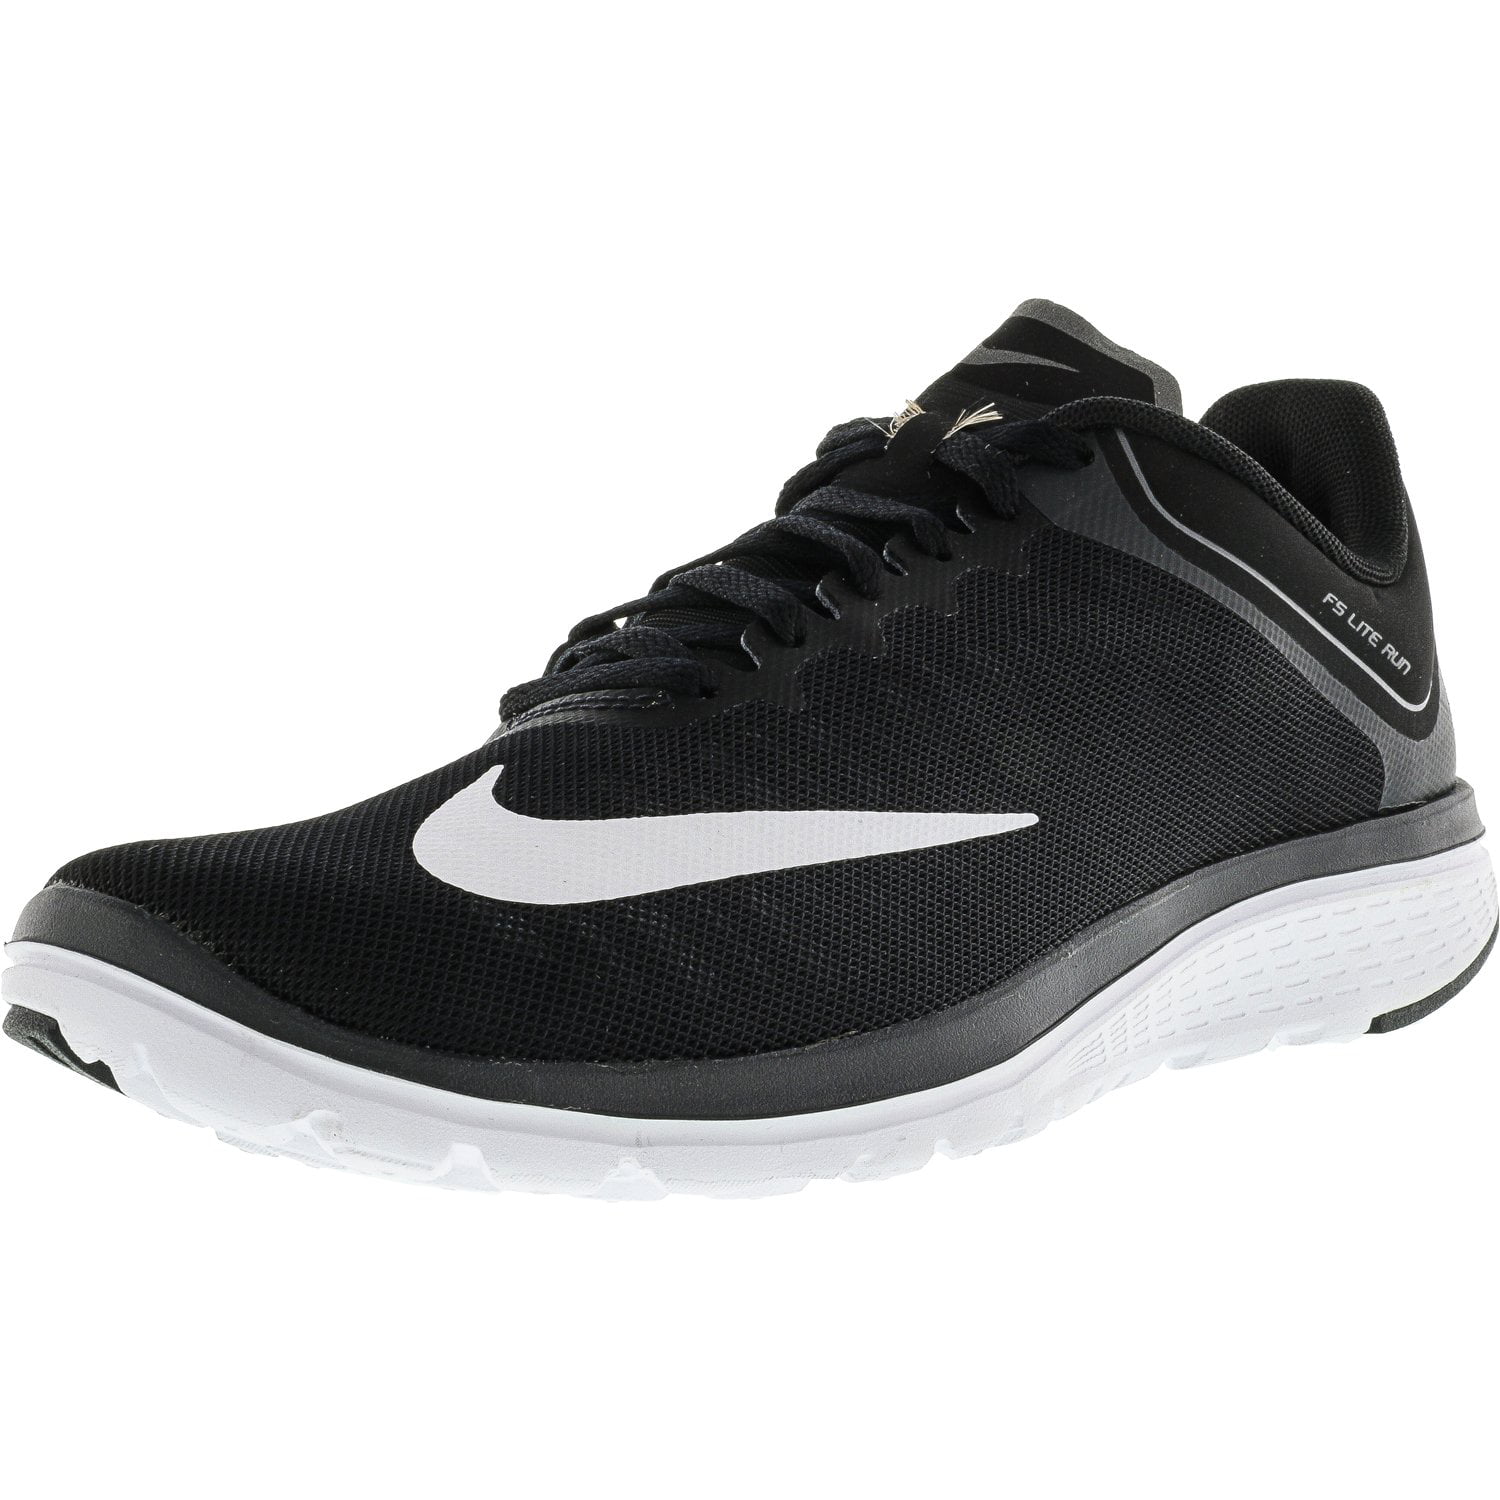 Nike Men's Fs Lite Run 4 Black / White-Anthracite Ankle-High Running ...